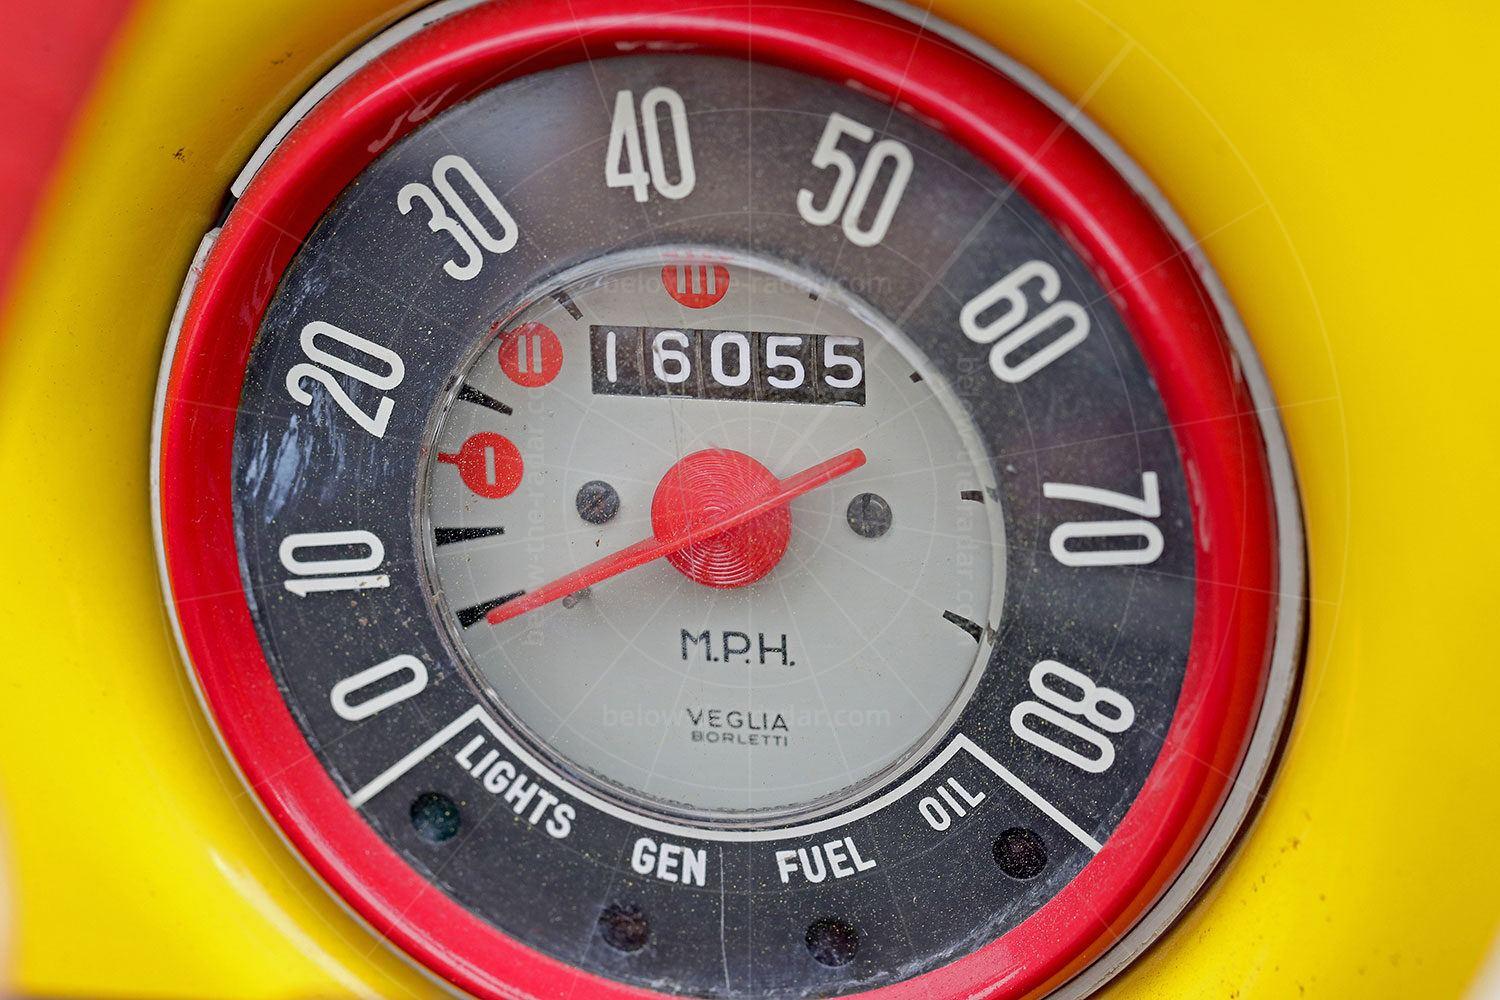 Fiat Gamine speedometer Pic: magiccarpics.co.uk | Fiat Gamine speedometer